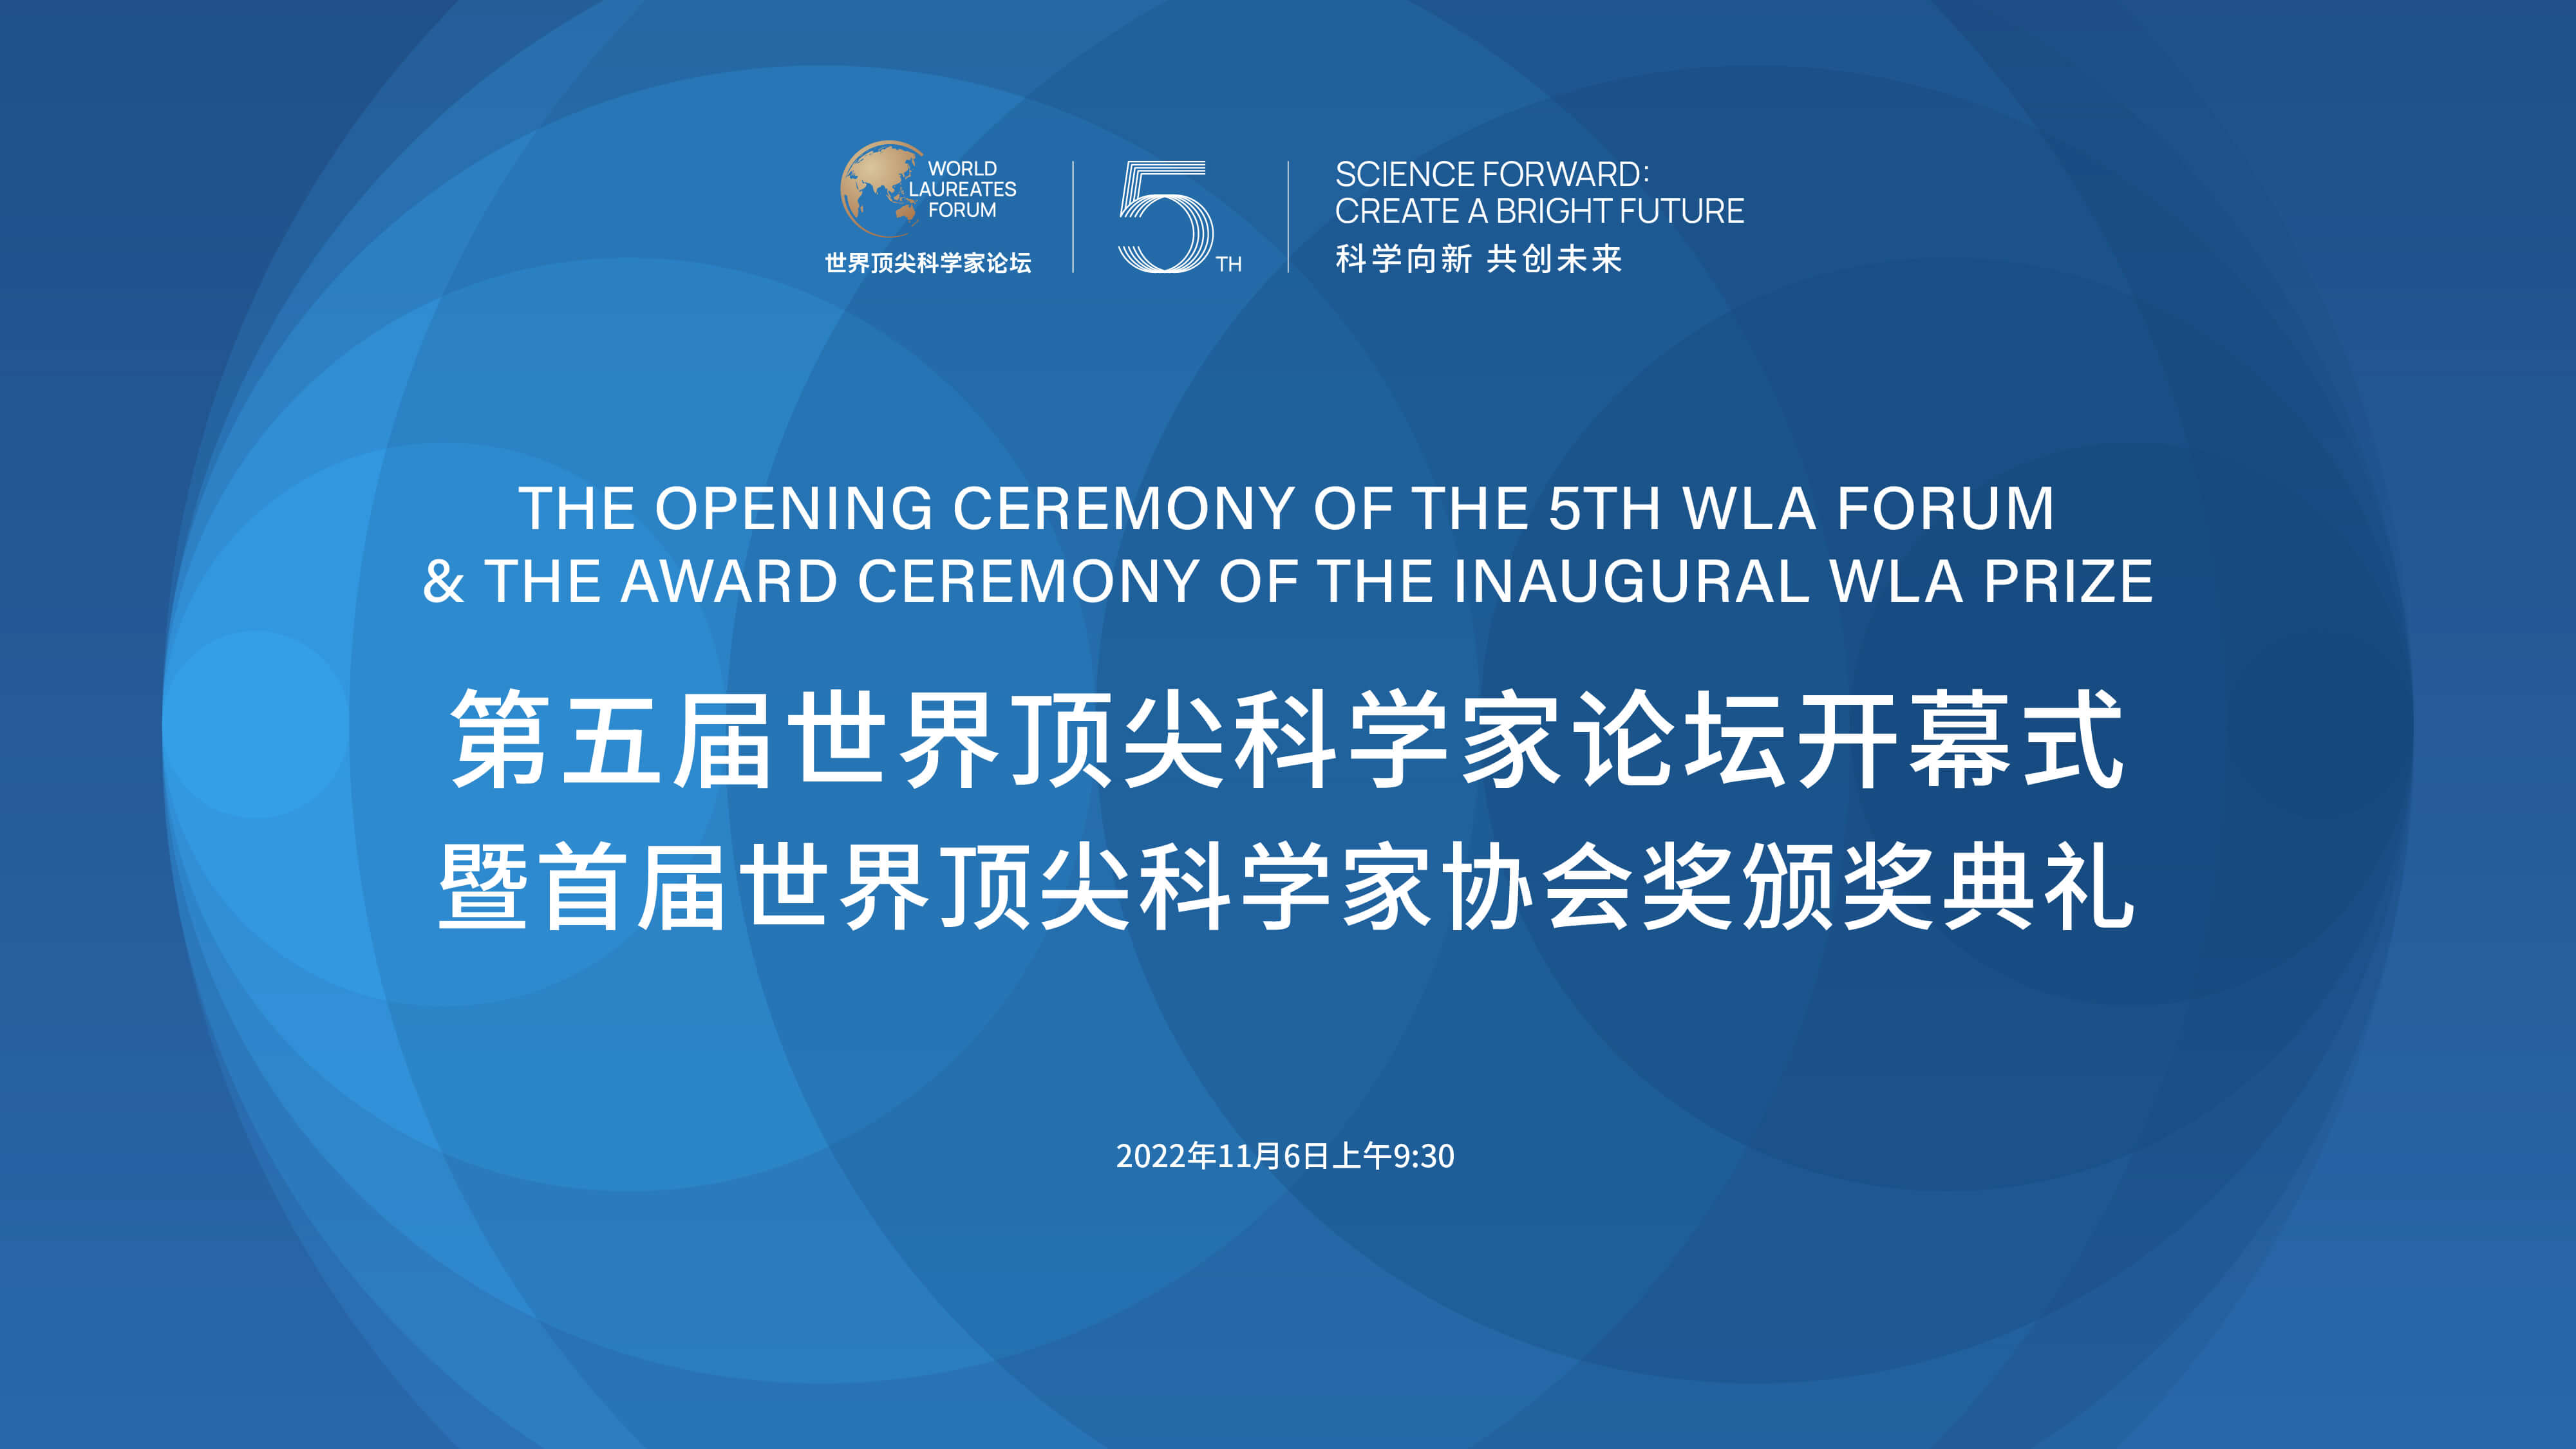 首届世界顶尖科学家协会奖颁奖典礼将于11月6日在沪举行